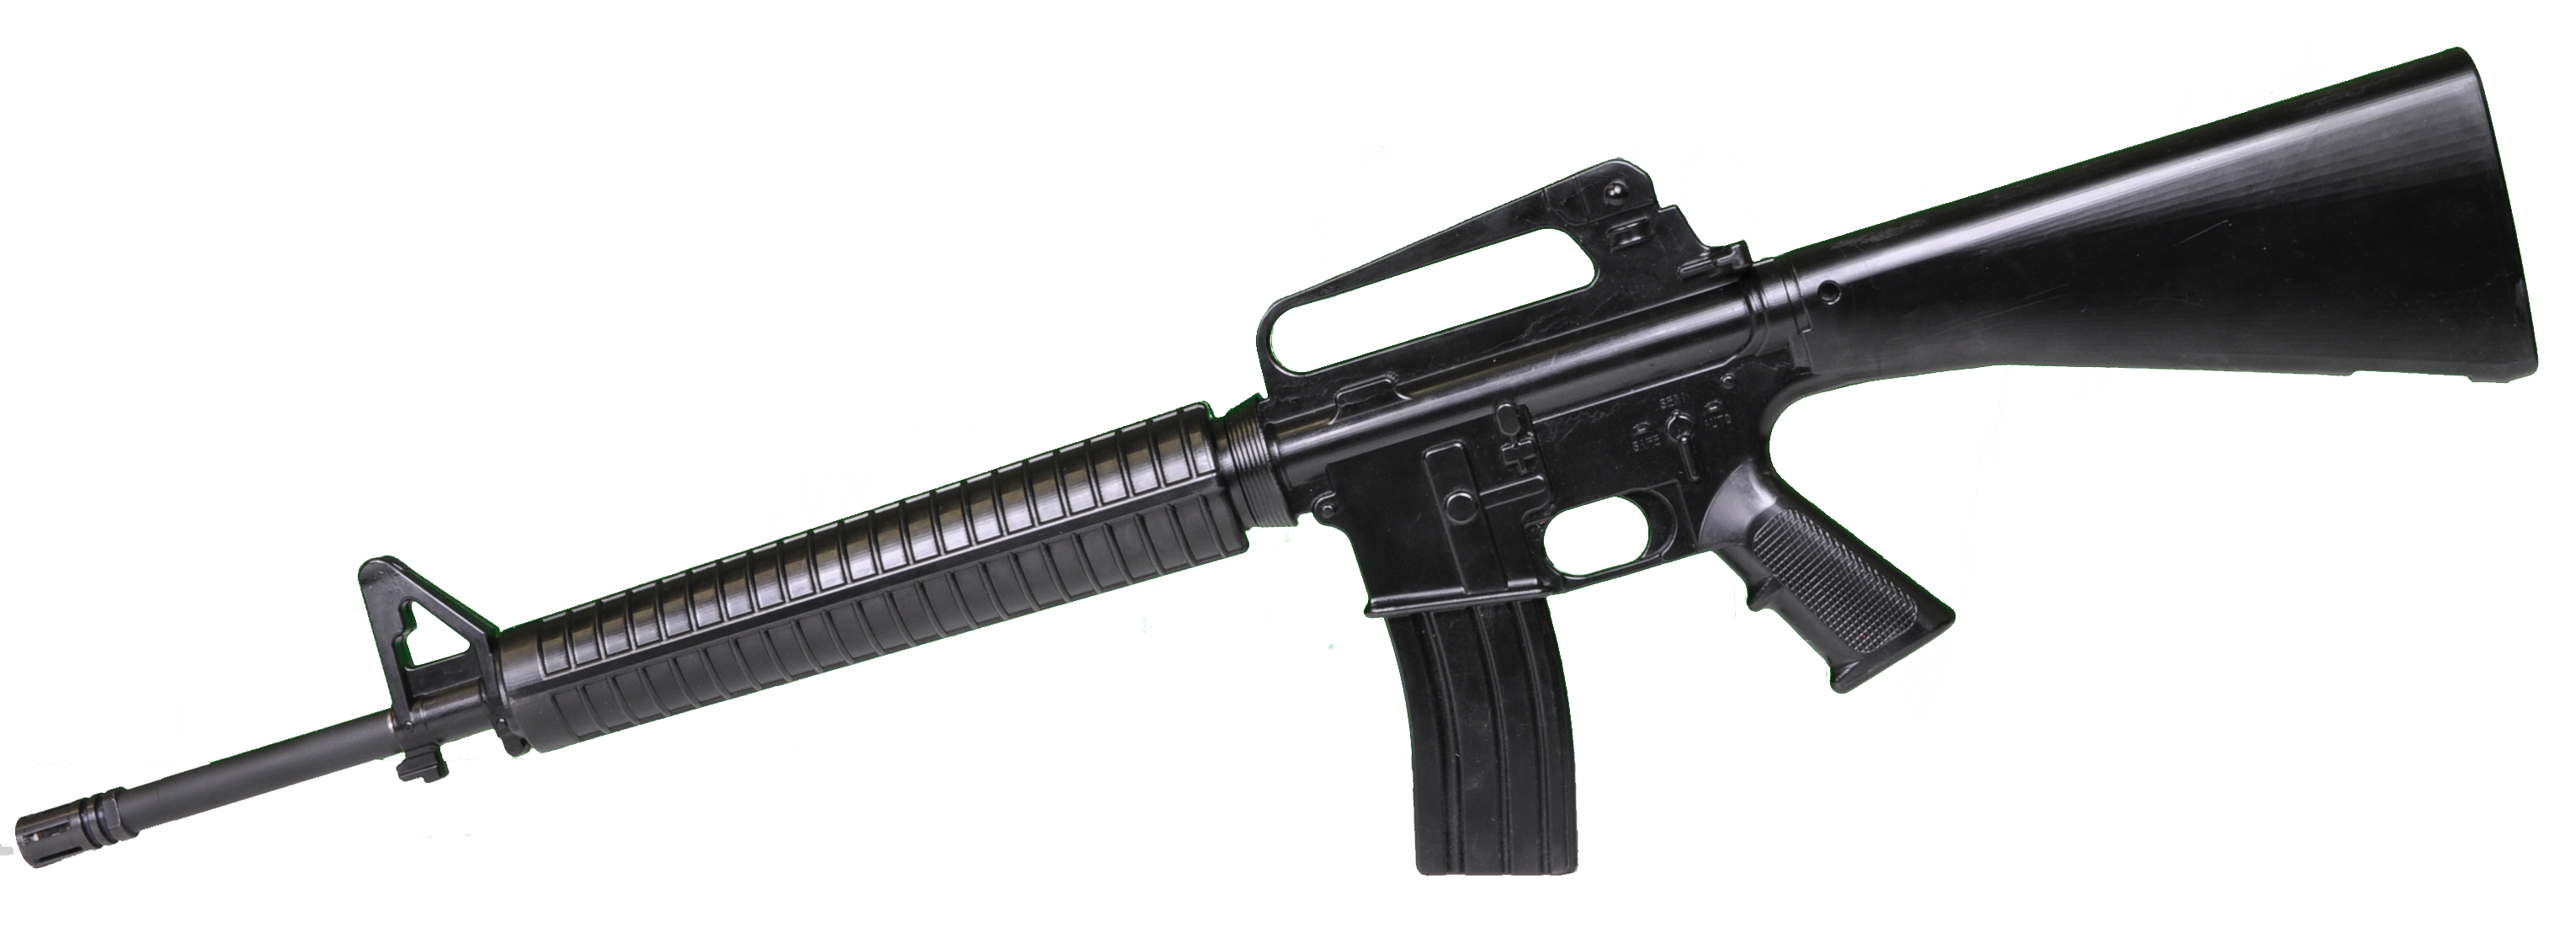 M16 미국 돌격 소총